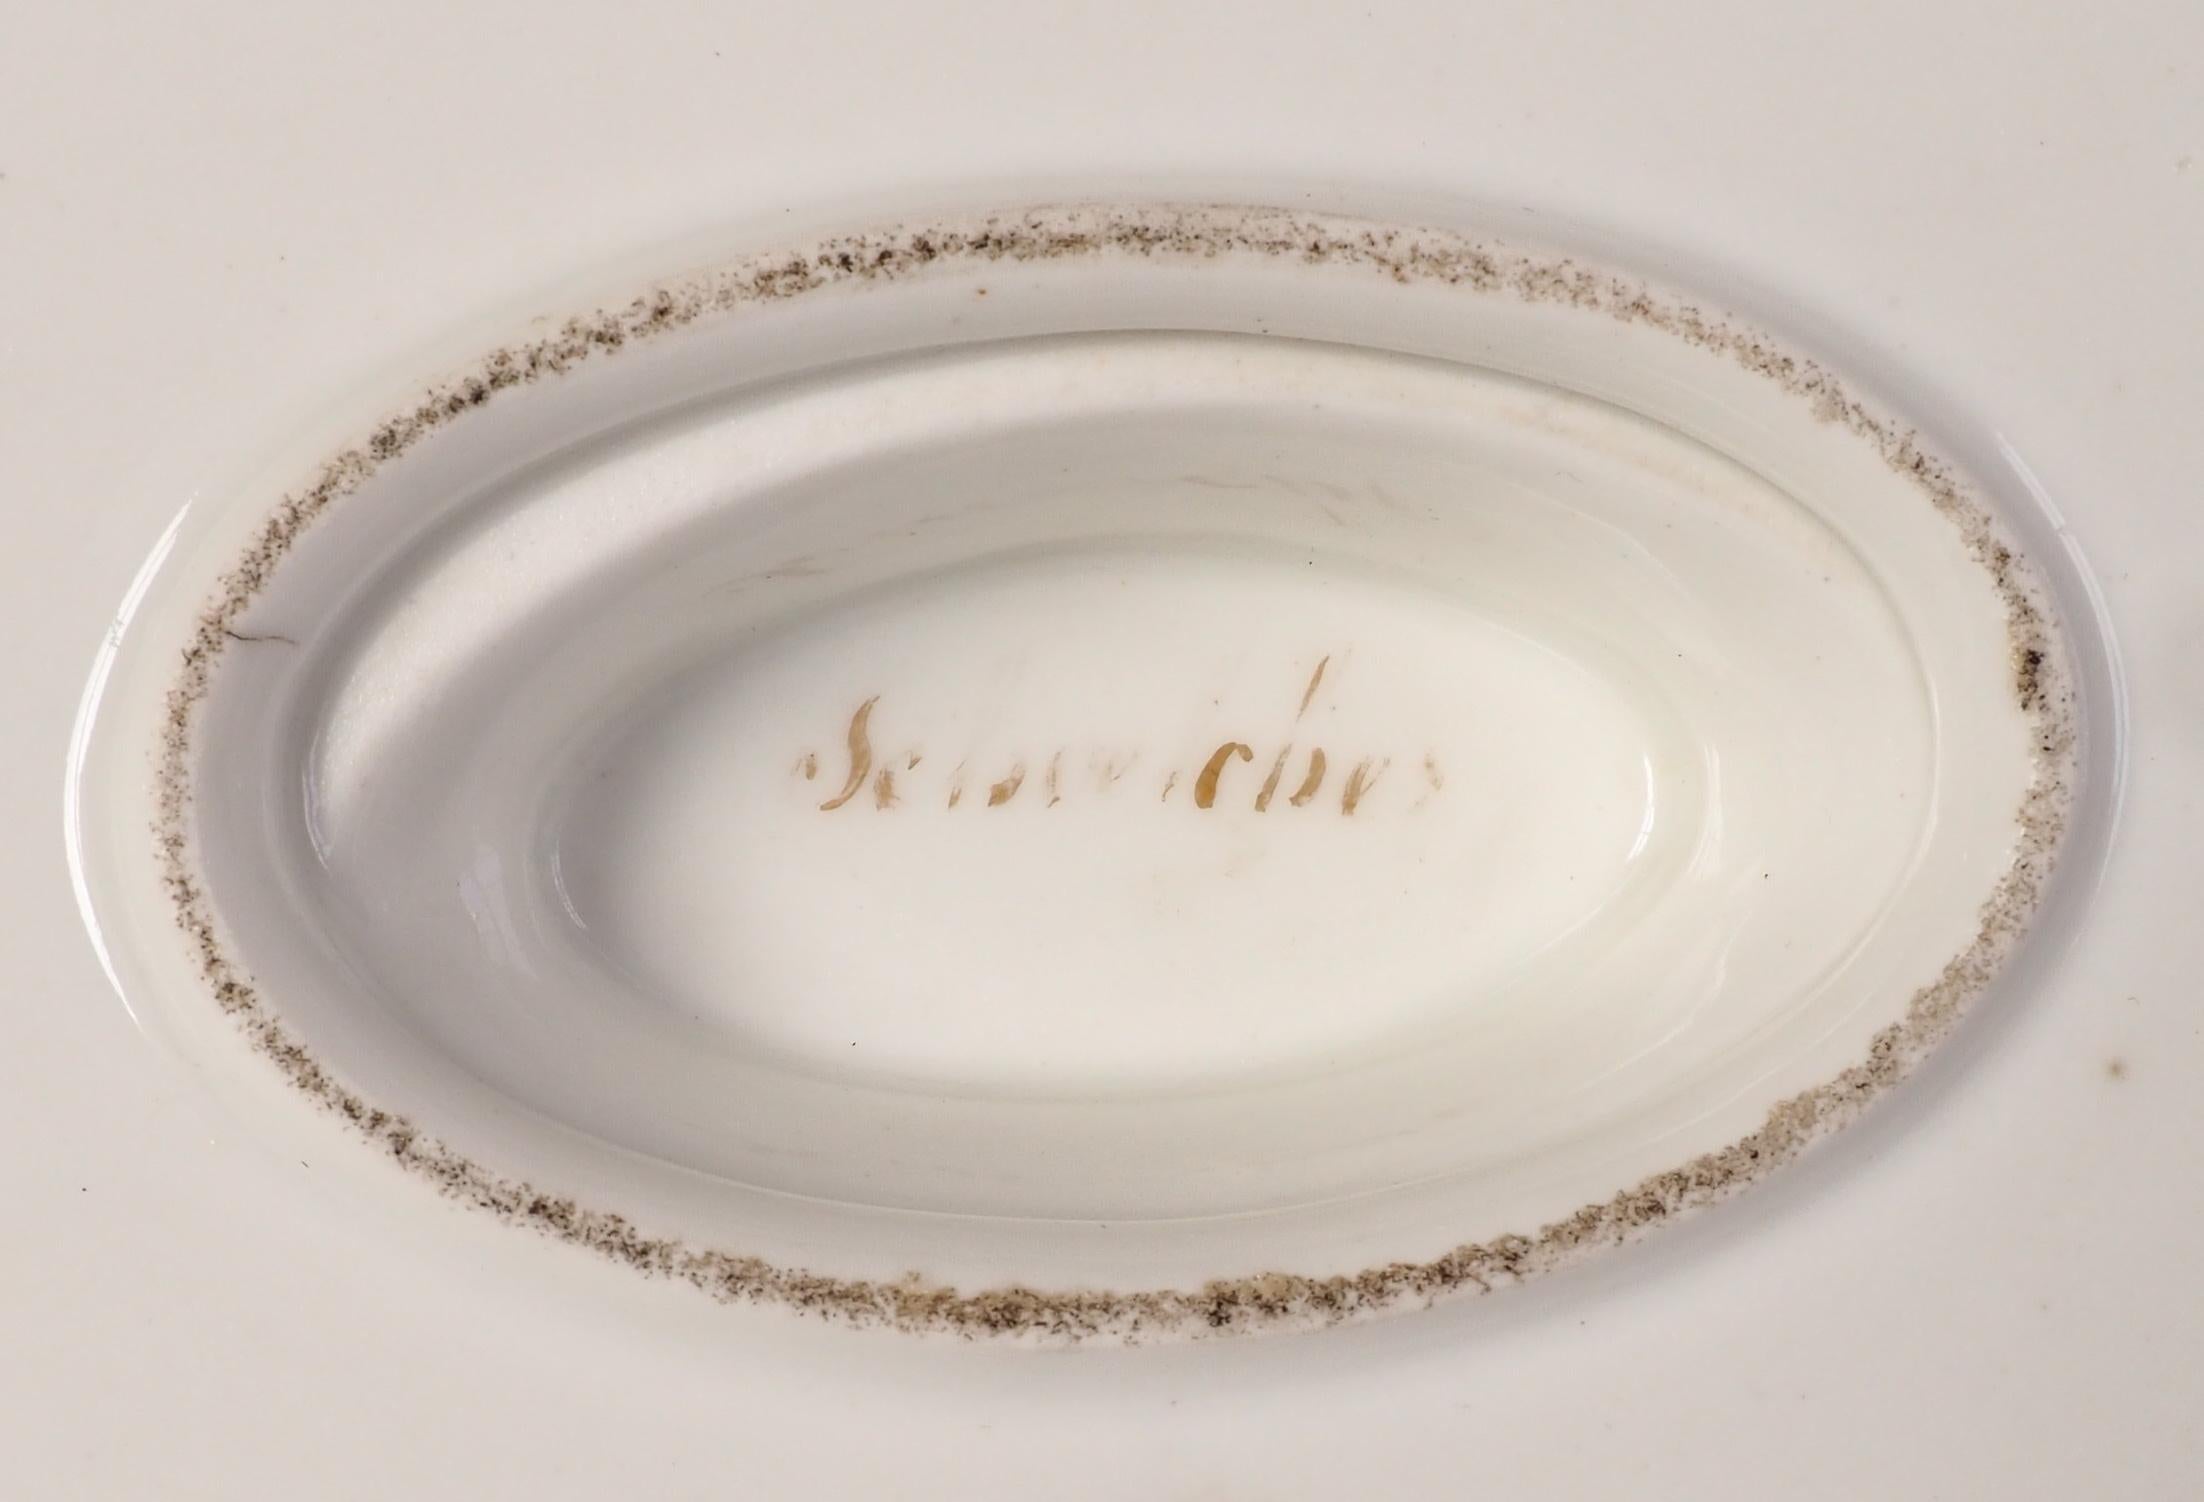 Schoelcher Manufacture : Empire Paris porcelain sauce boat 19th century - signed For Sale 8